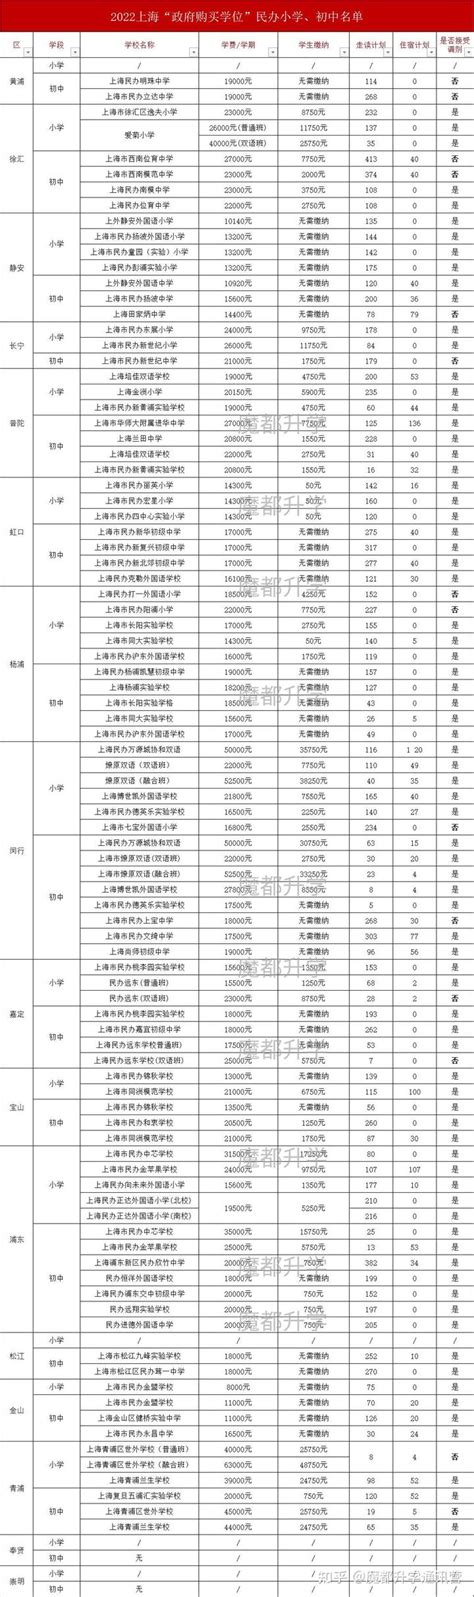 上海96所民办学校22年招生简章及购买学位一览表 - 知乎